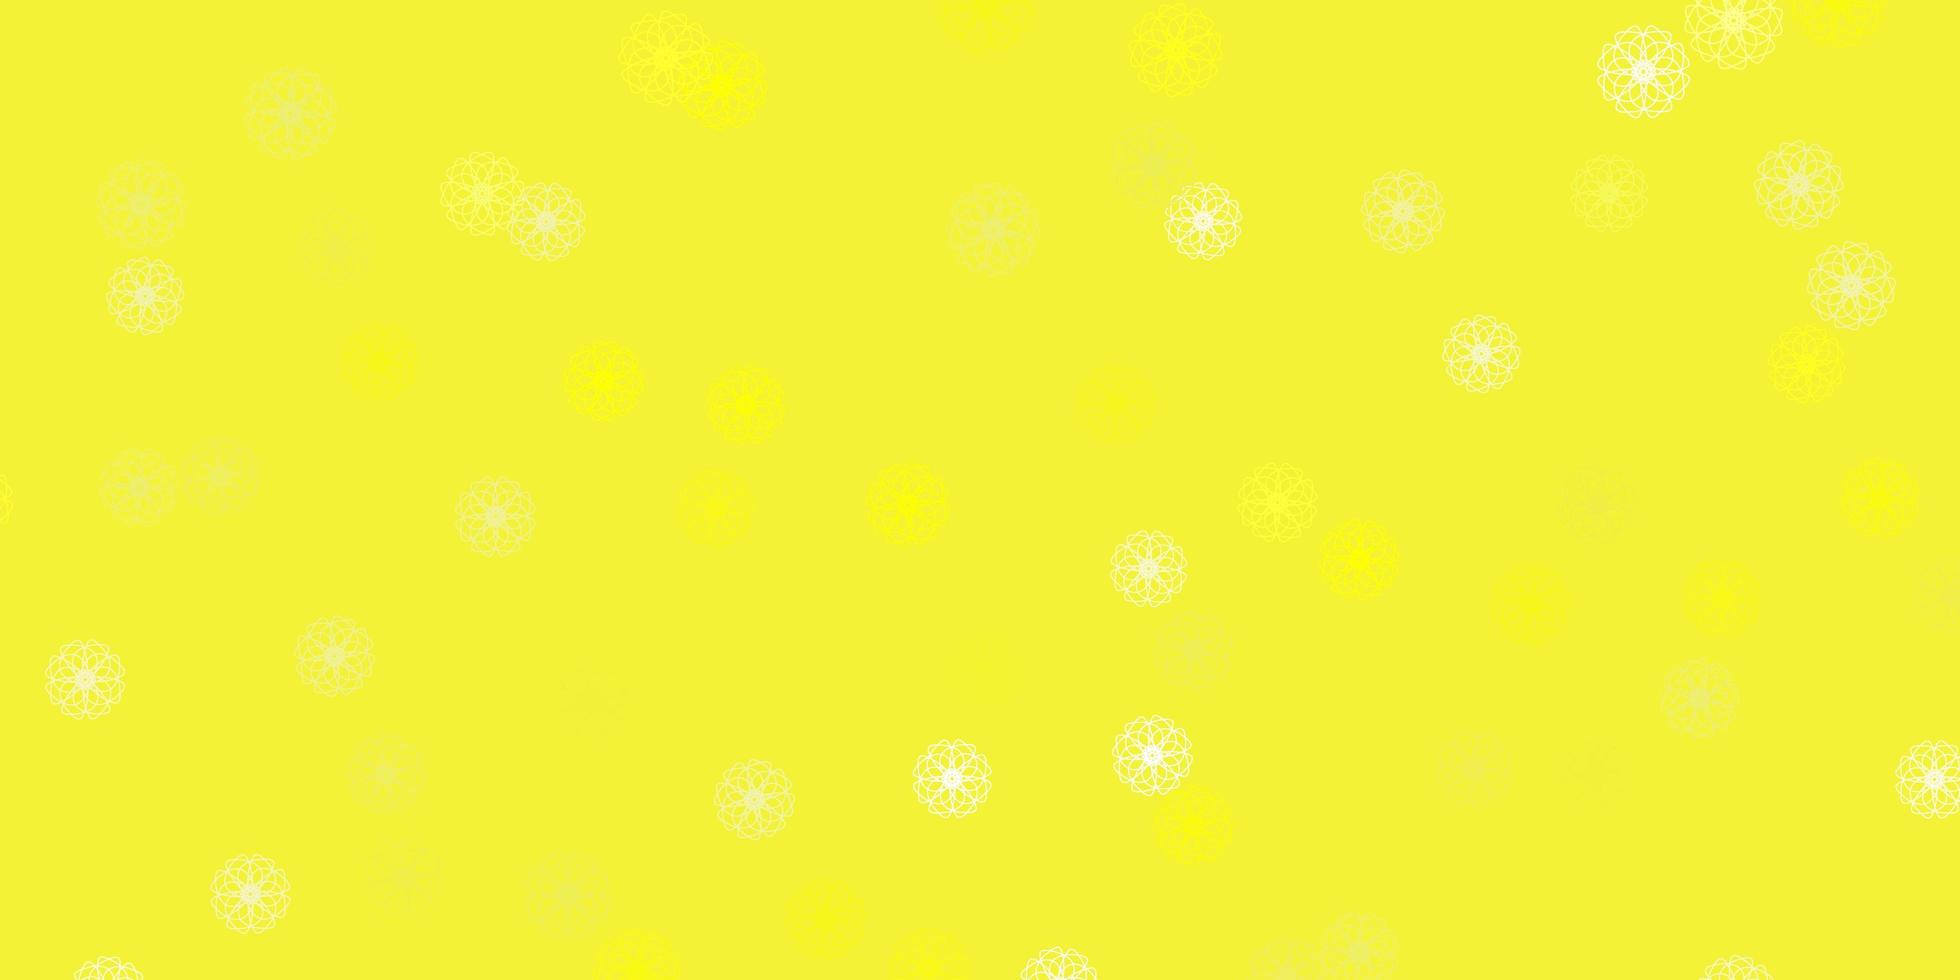 diseño natural de vector amarillo claro con flores.